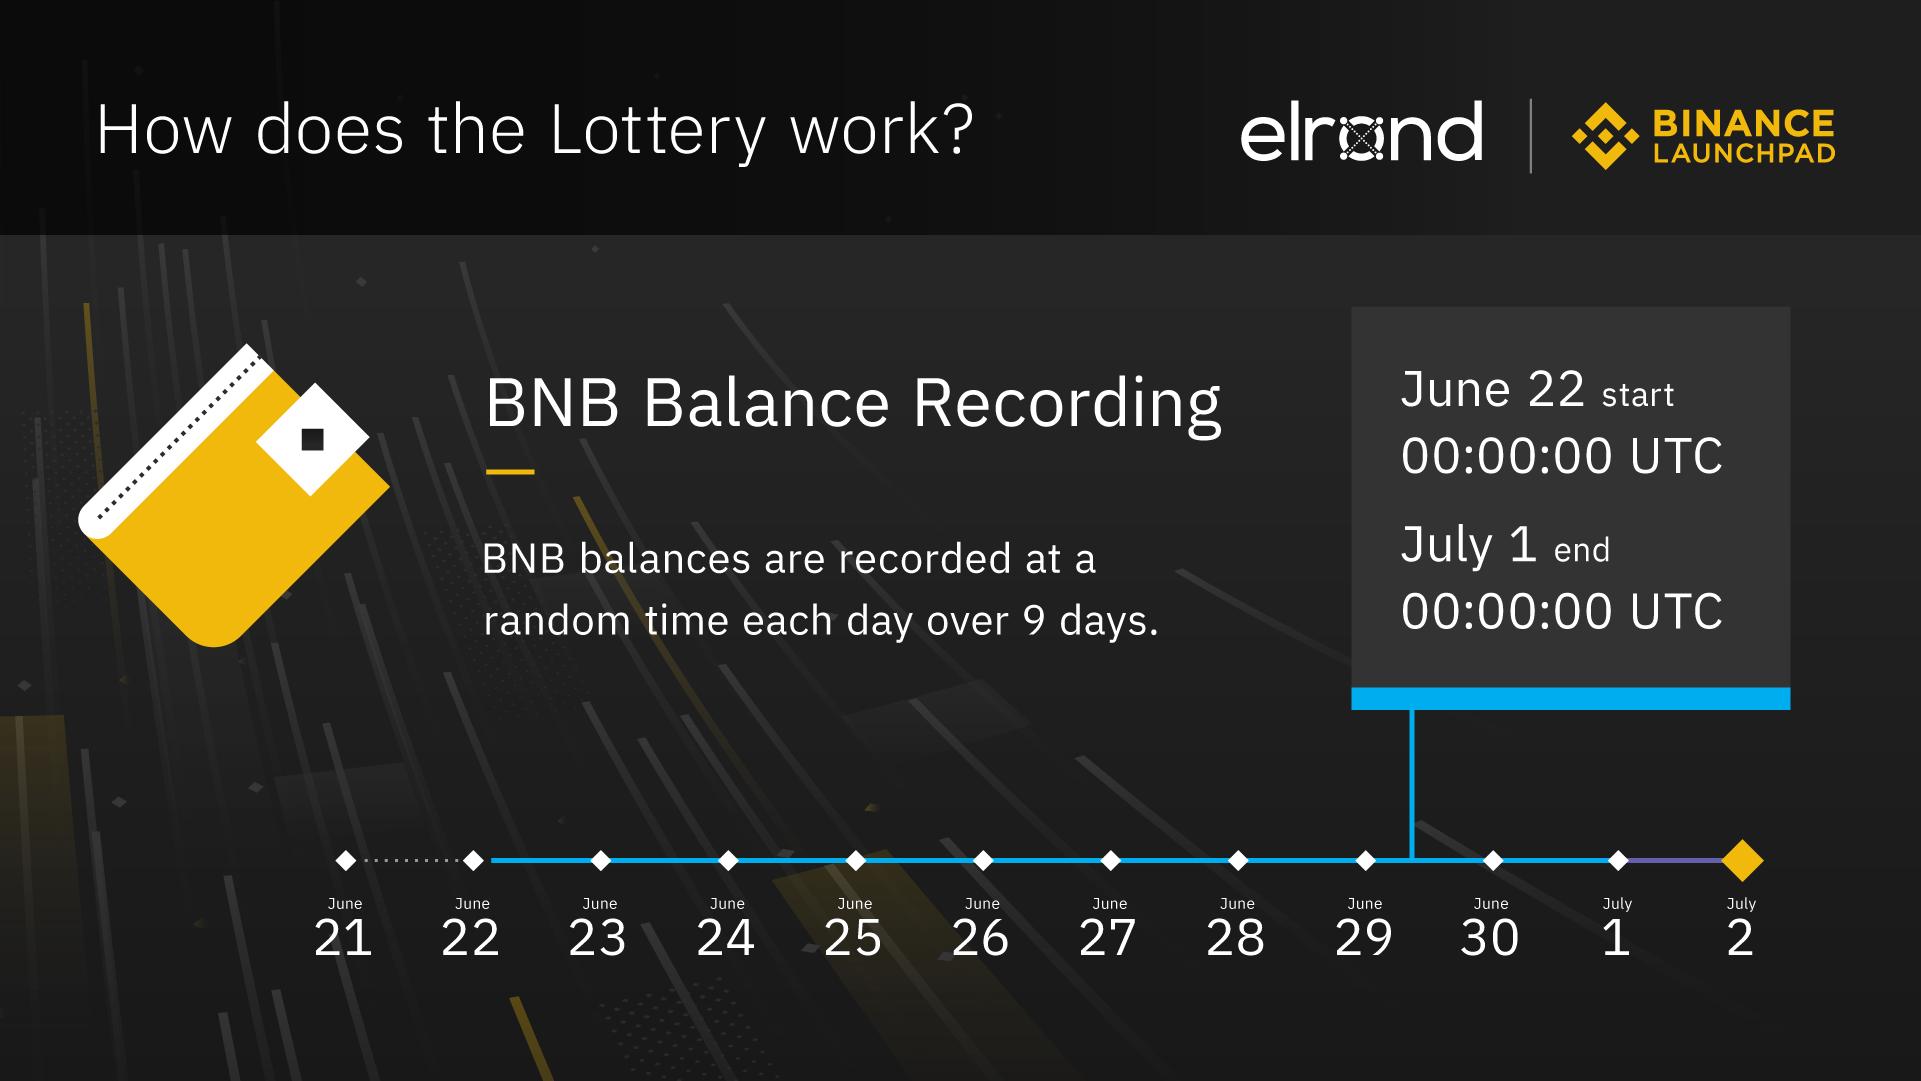 Binance Launchpad Lottery